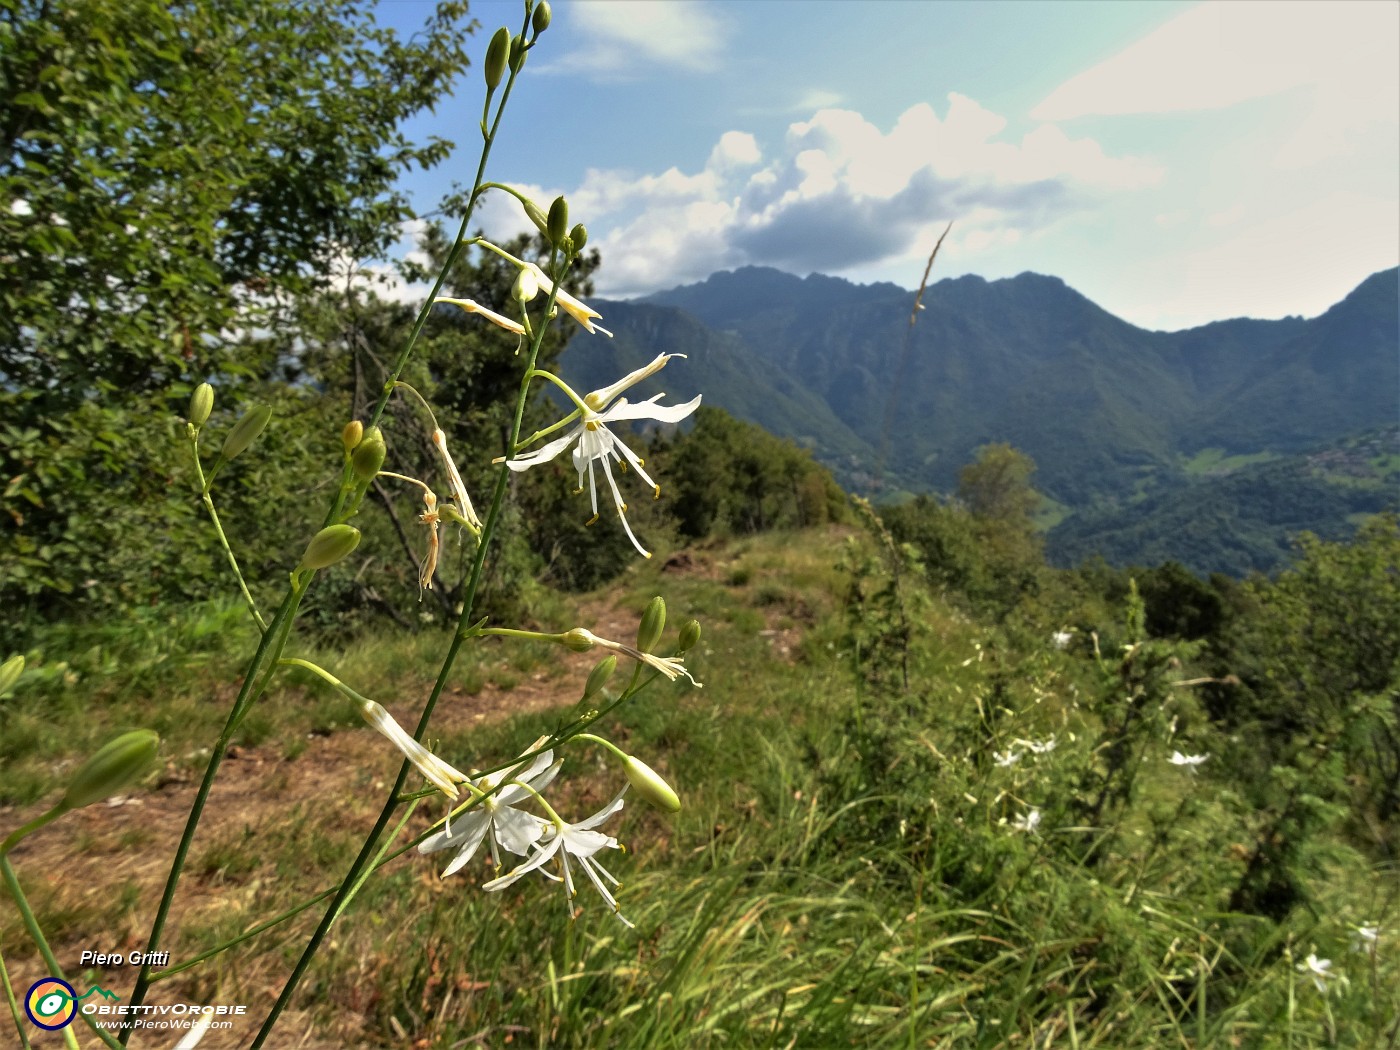 51 Belli questi fiori bianchi di Lilioasfodelo minore ( Anthericum ramosum) che ingentiliscono il sentiero e il paesaggio.JPG